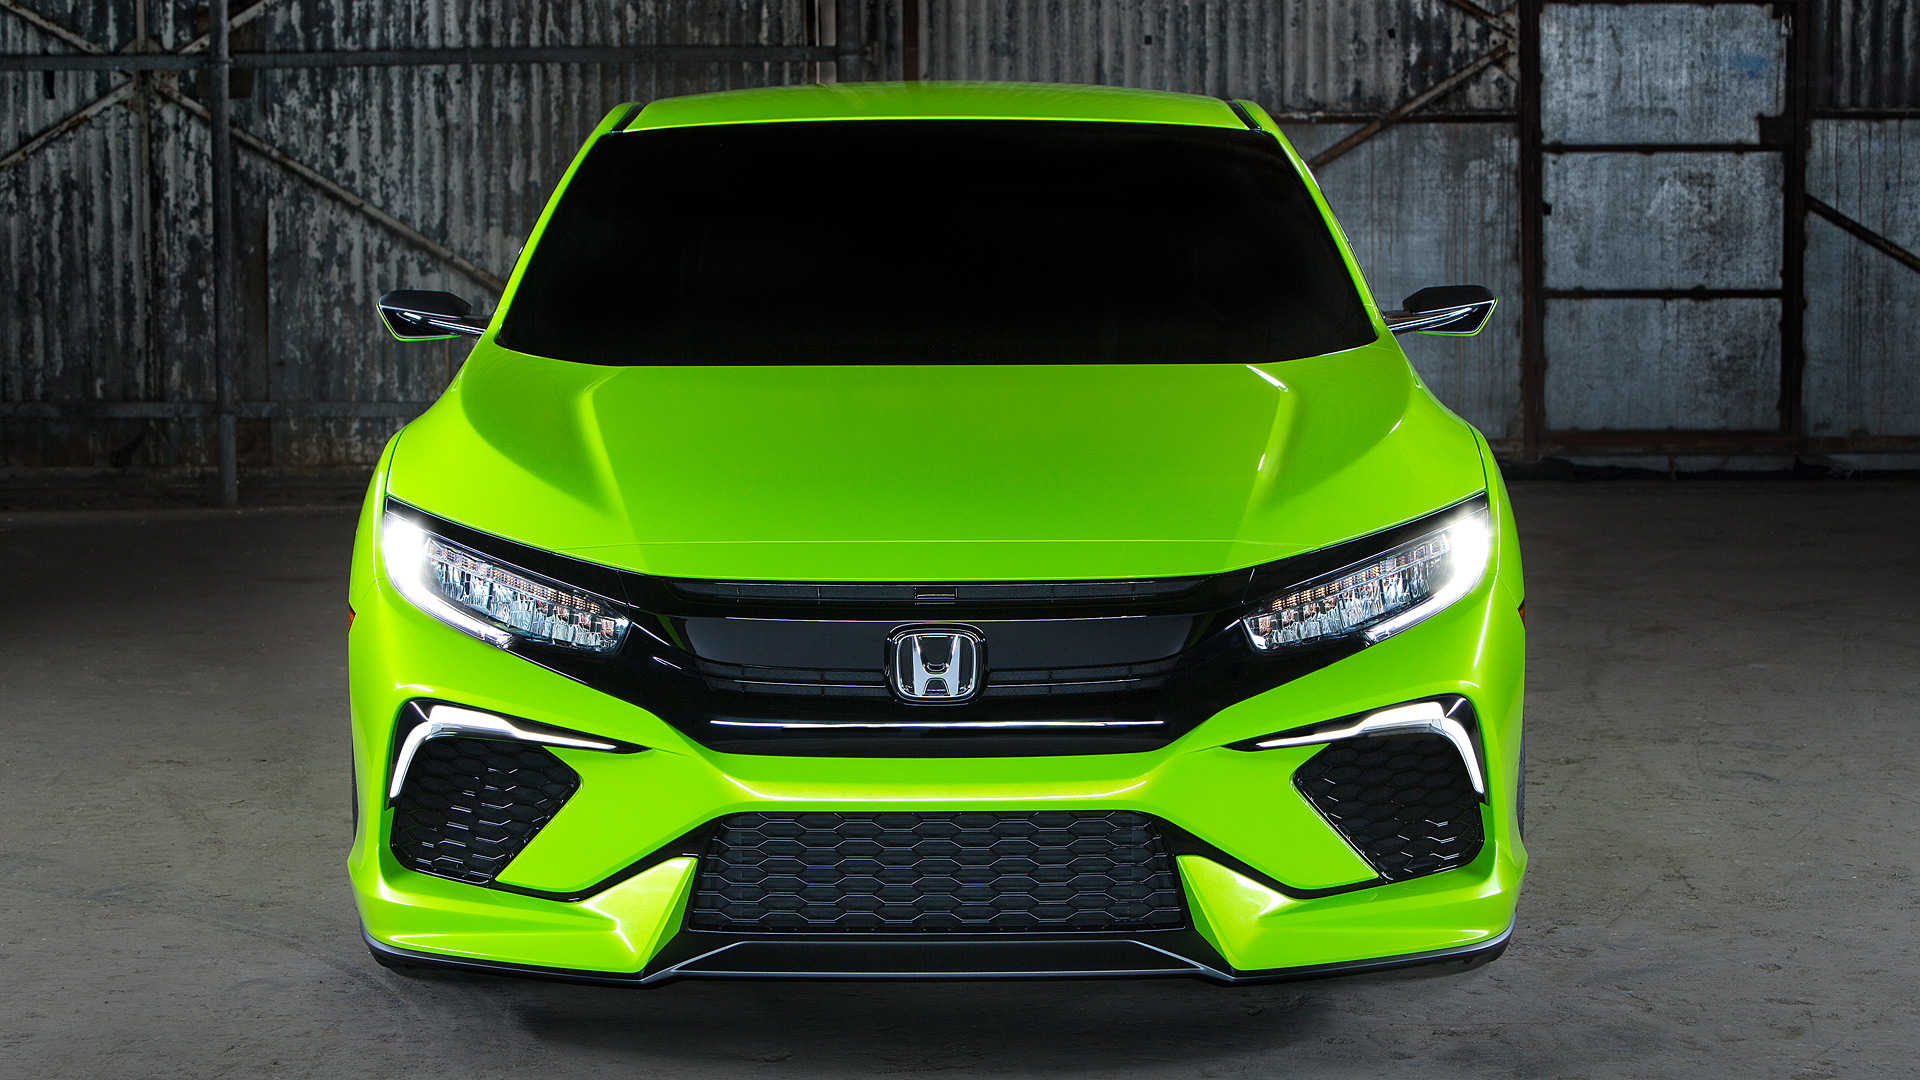  2015 Honda Civic Concept Wallpaper.